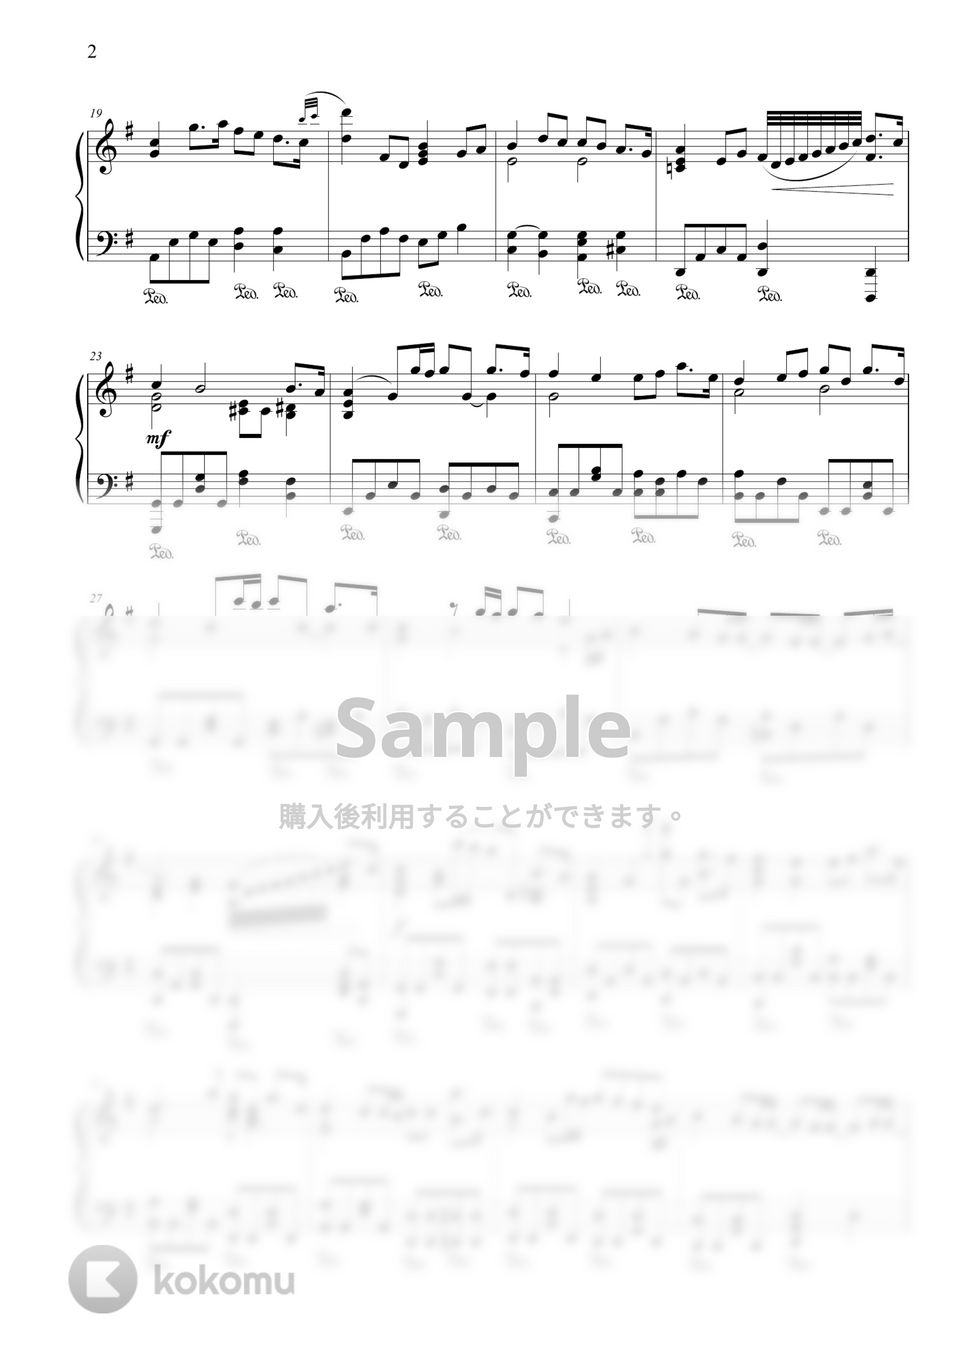 竹内まりや - いのちの歌 by CANACANA family